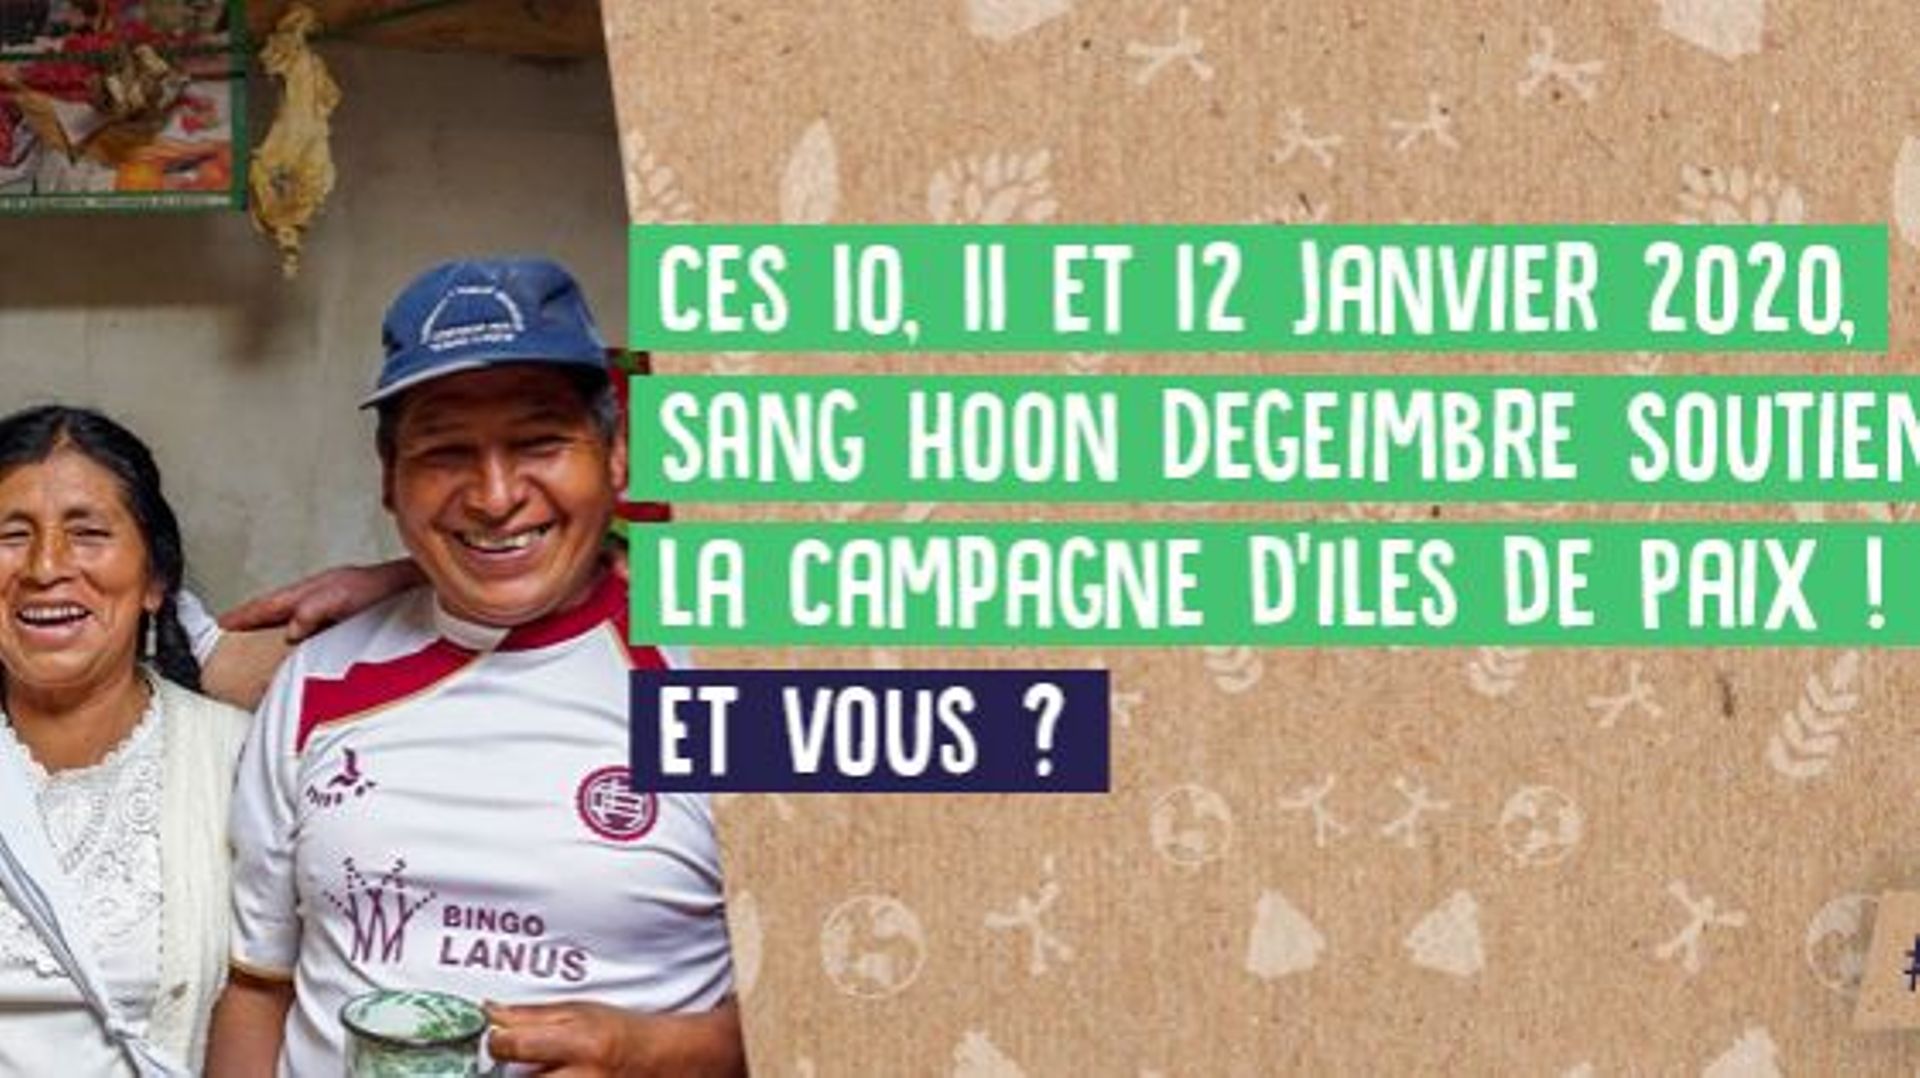 50e-campagne-des-iles-de-paix-ces-10-11-et-12-janvier